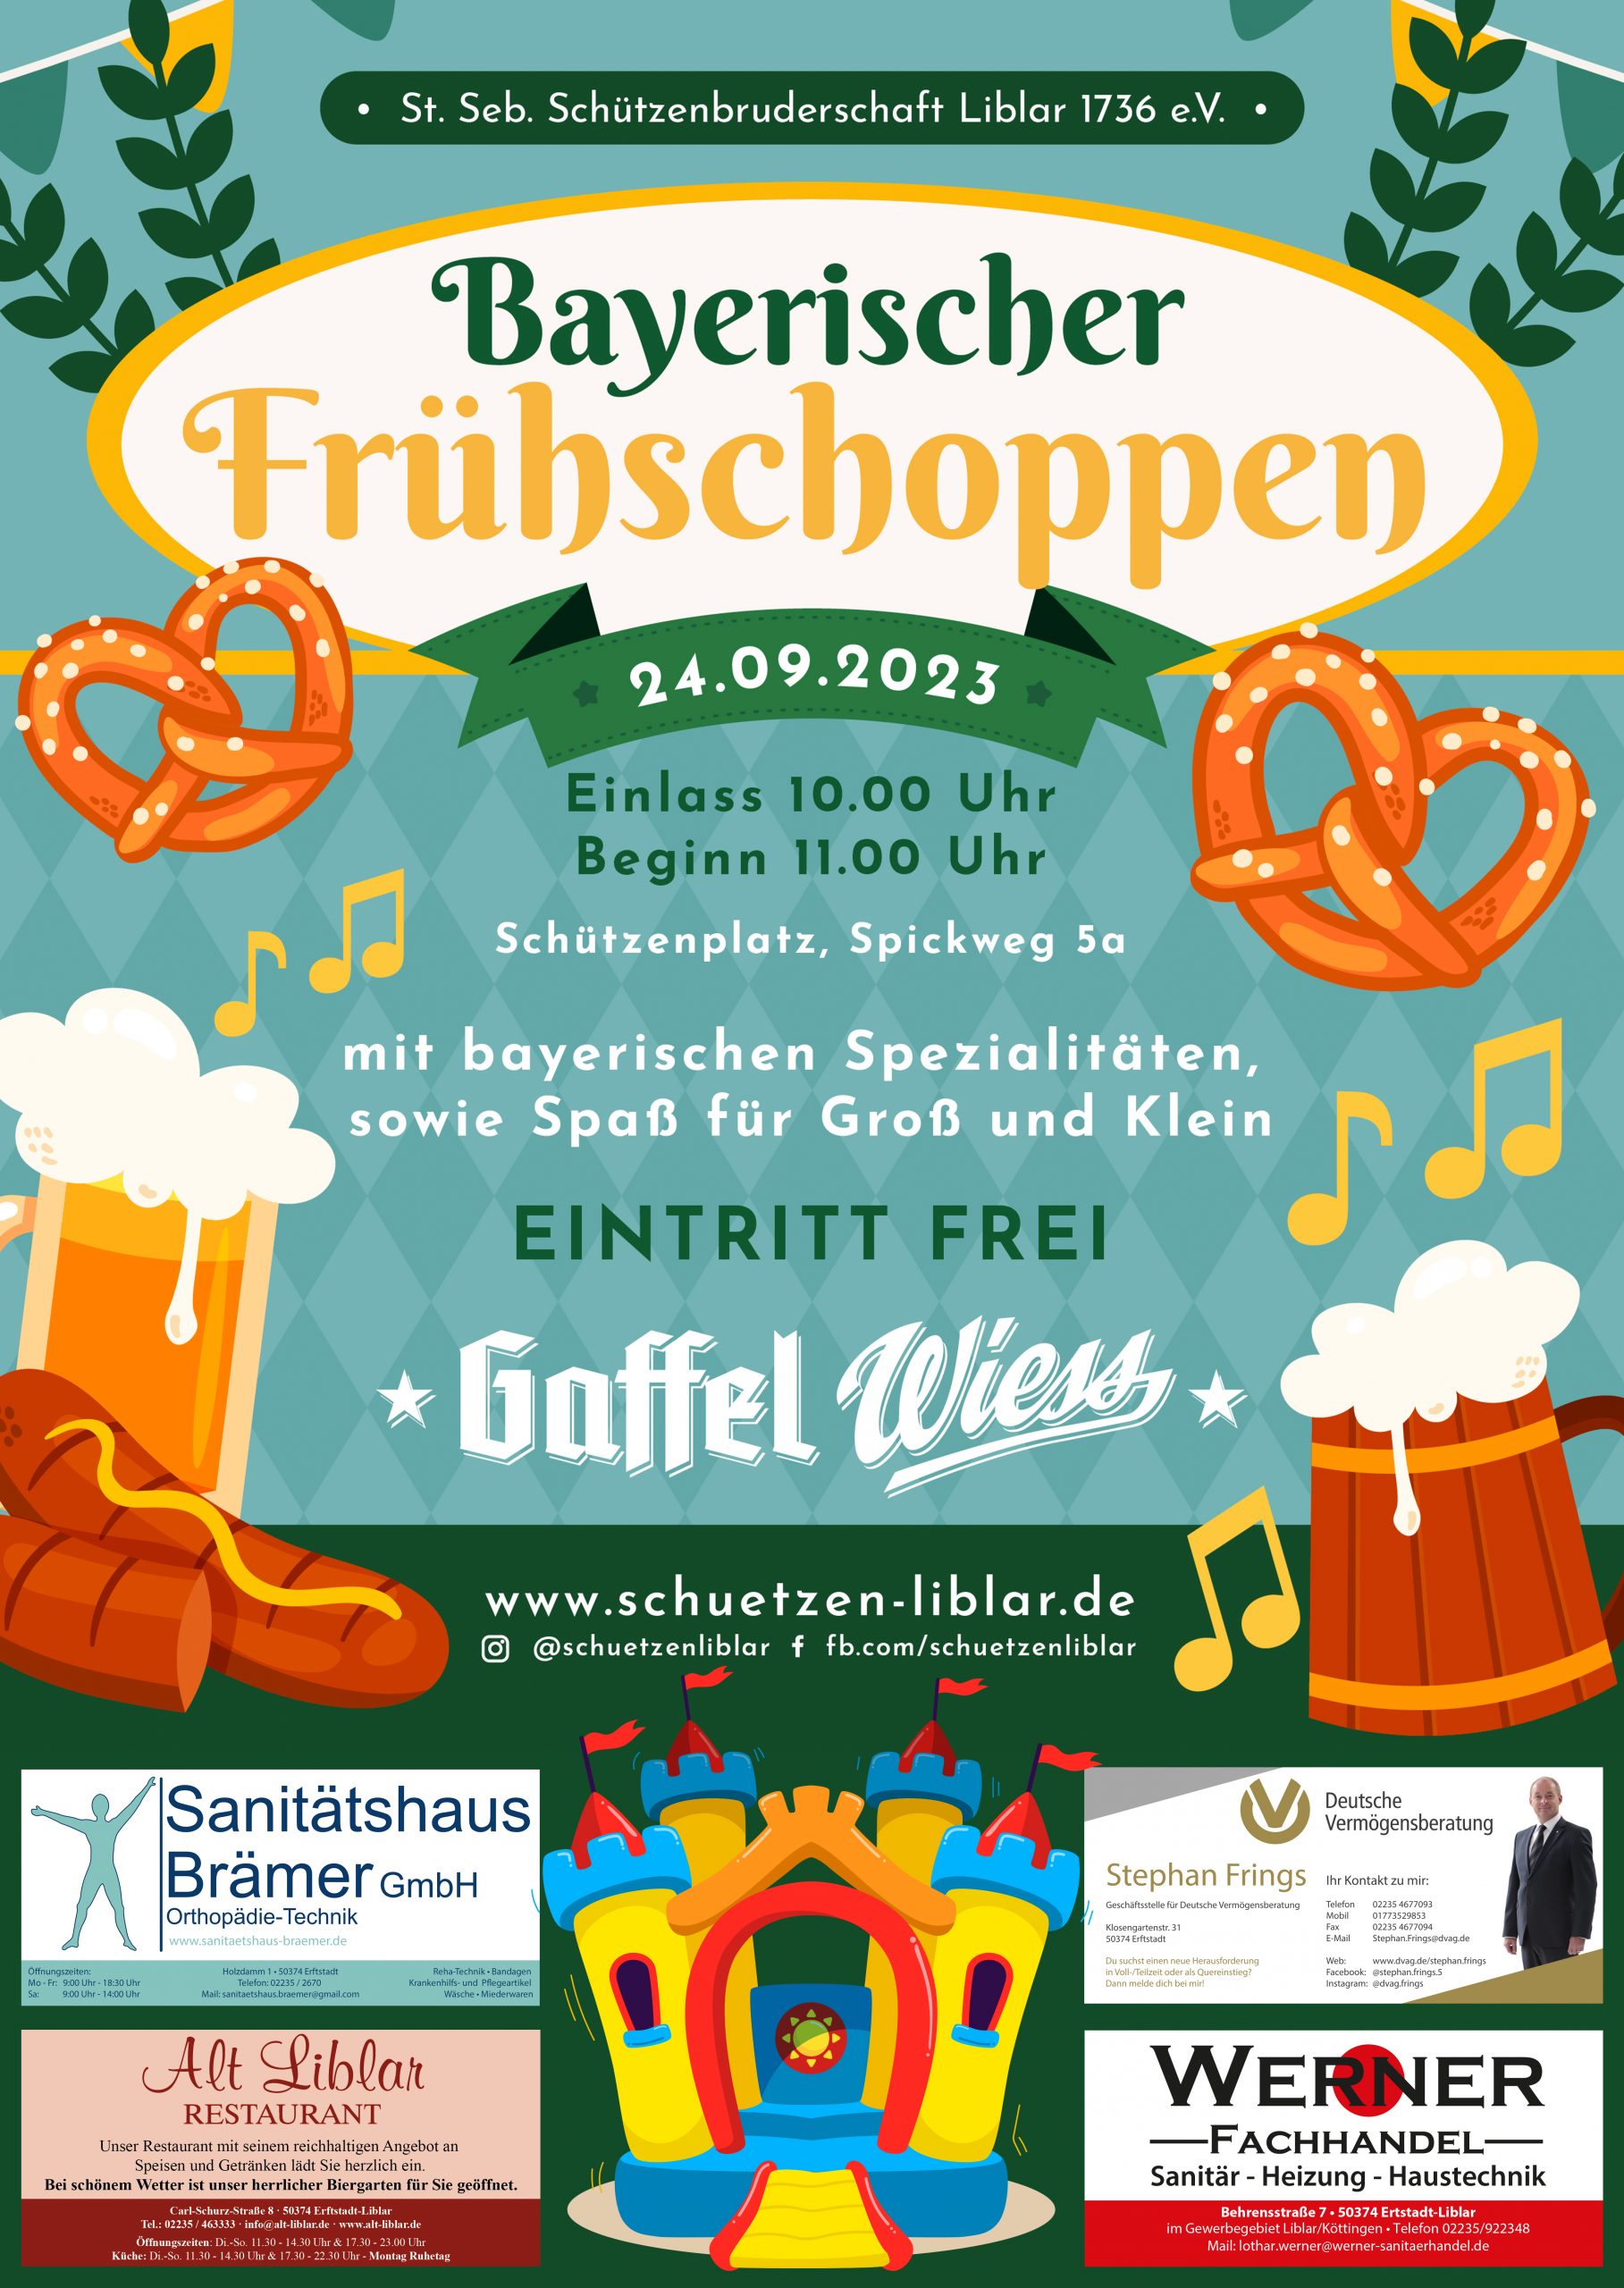 Bayerischer Frühschoppen in Liblar am 25.09.2022